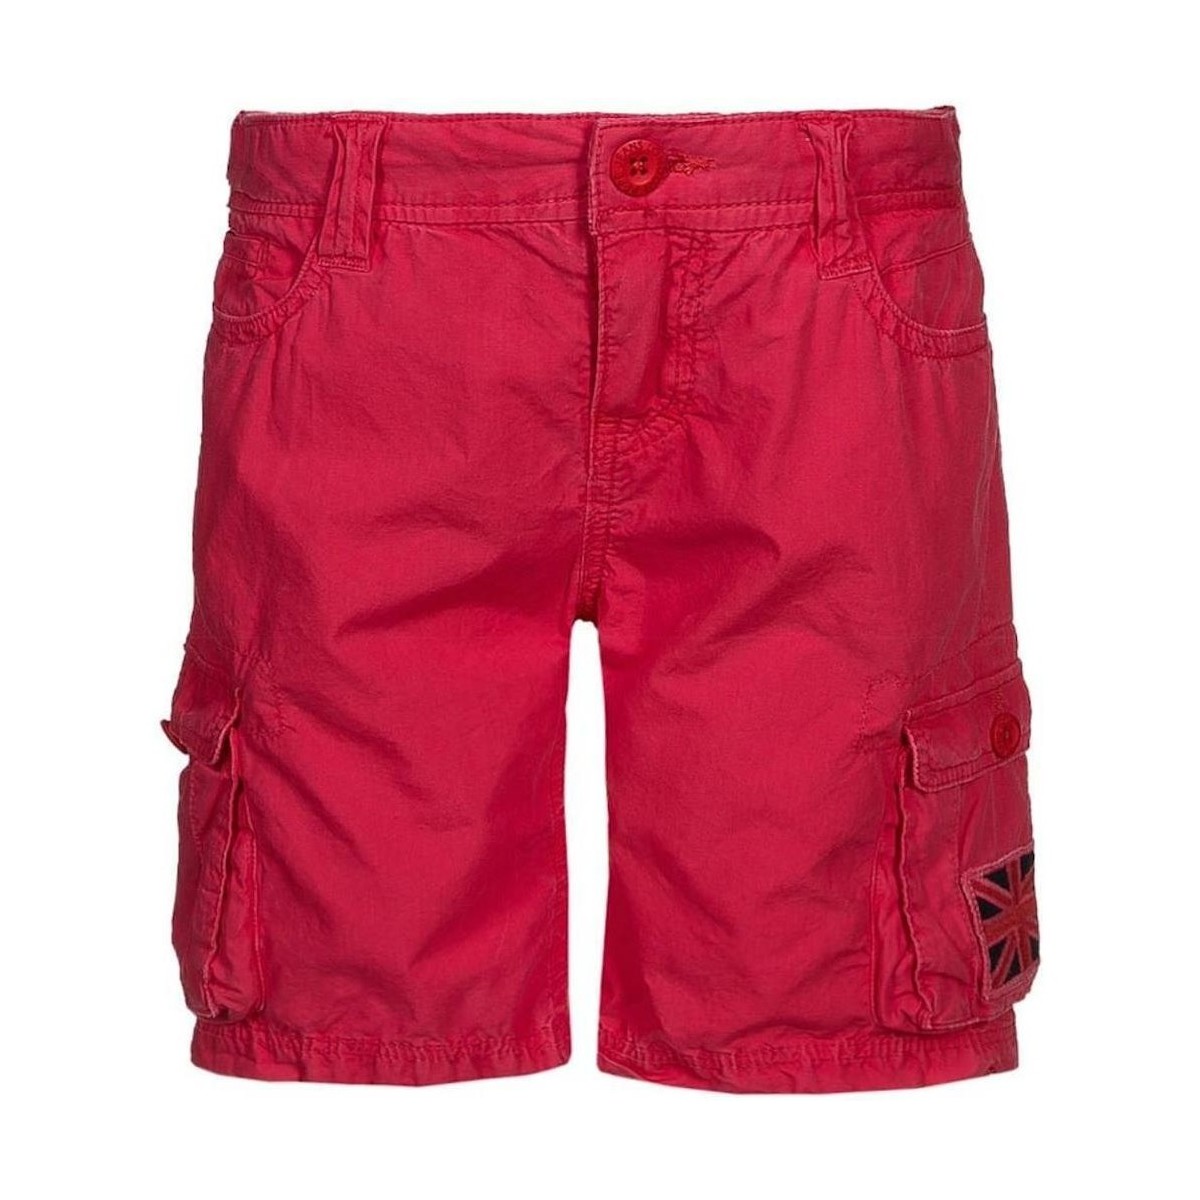 Oblačila Dečki Kratke hlače & Bermuda Pepe jeans  Rdeča